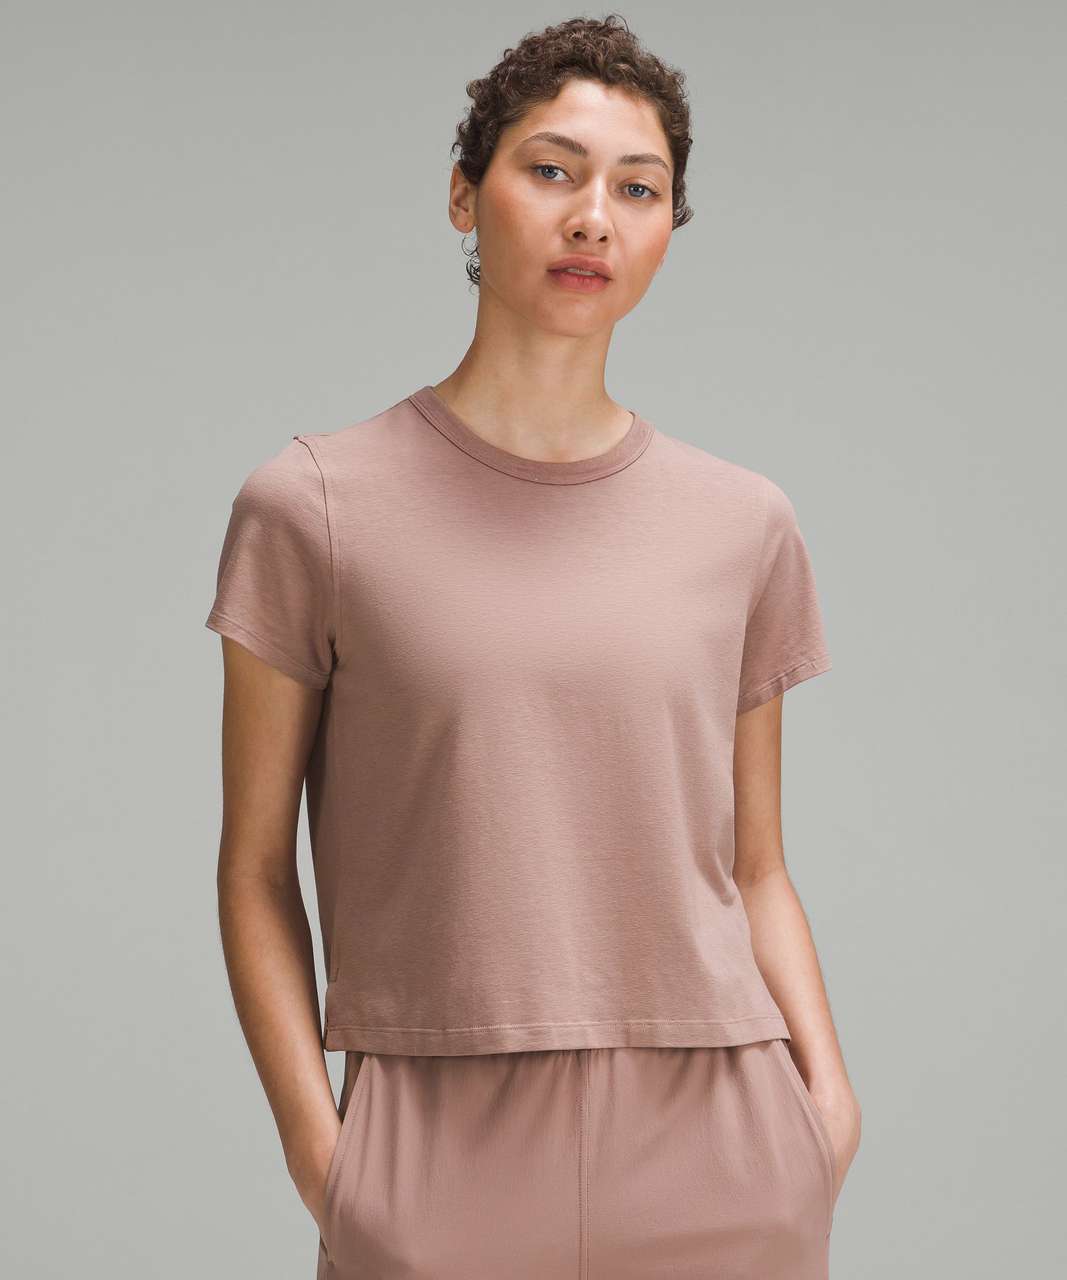 Lululemon Classic-Fit Cotton-Blend T-Shirt - Twilight Rose